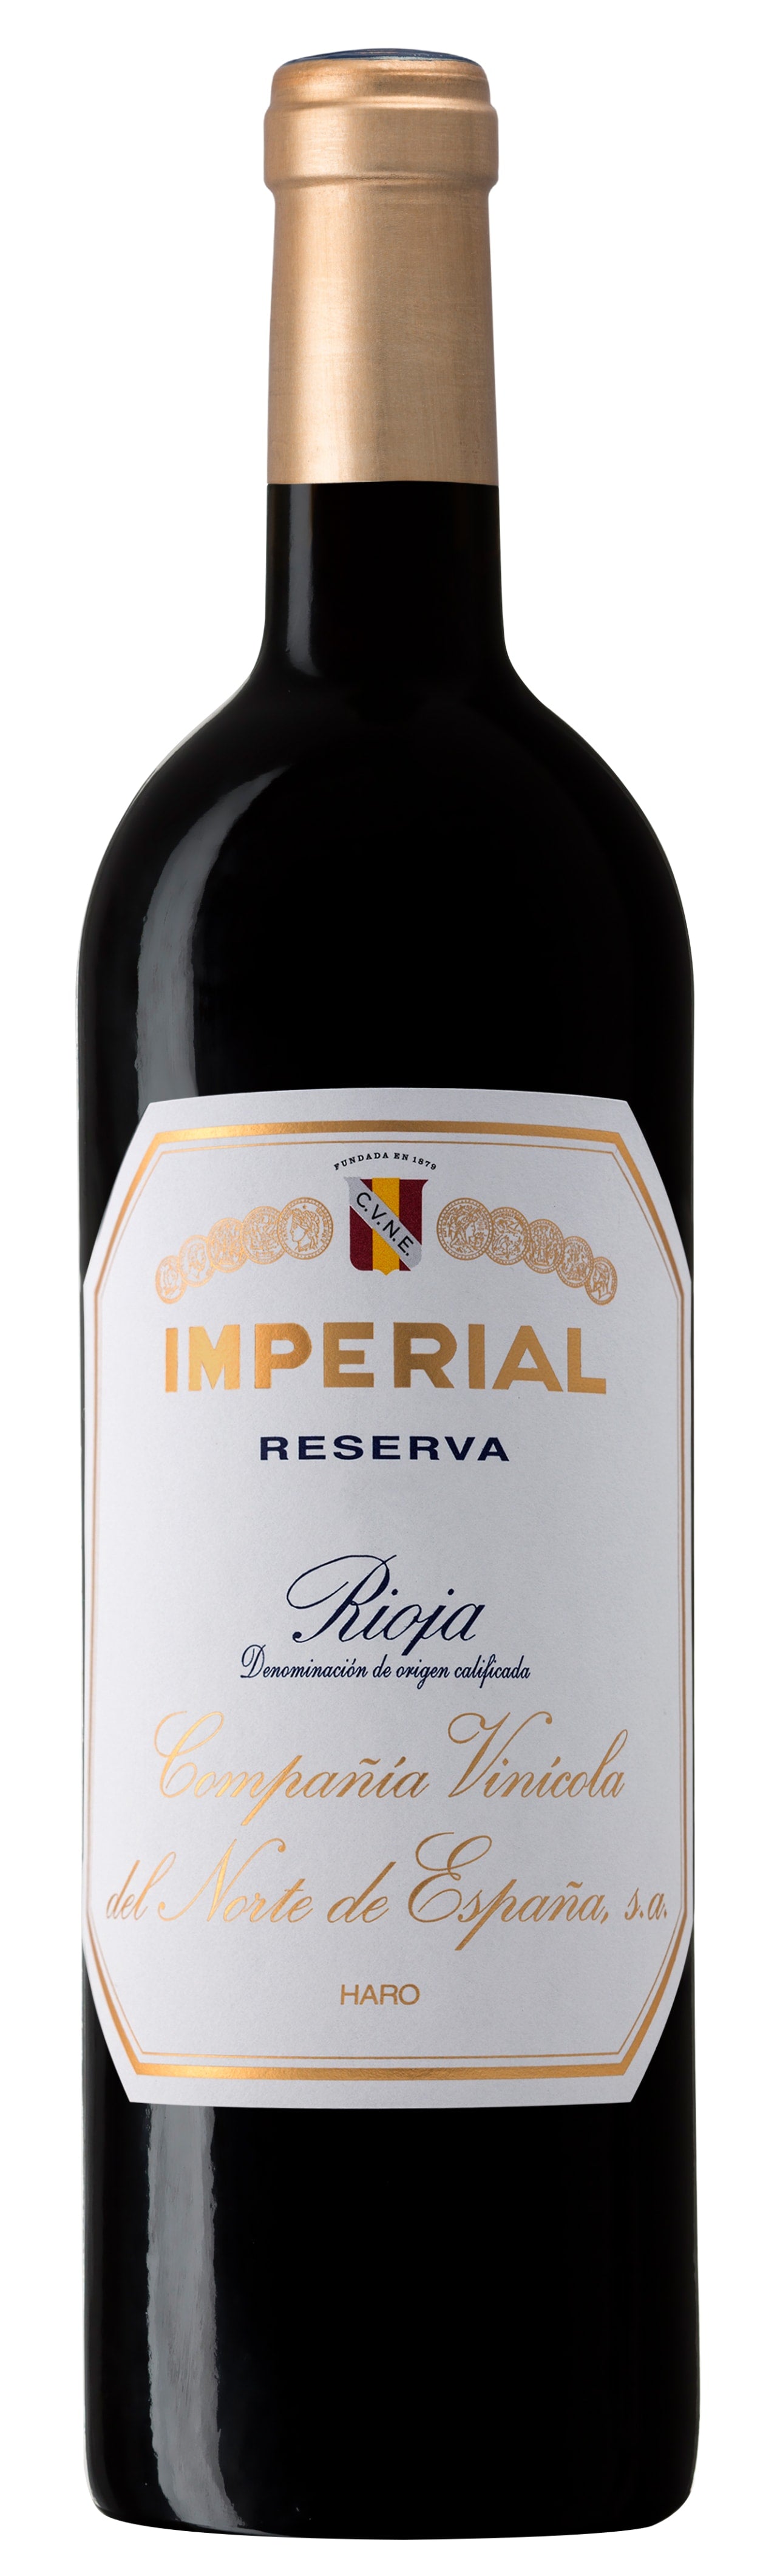 Rioja Reserva, Imperial, CVNE 2017